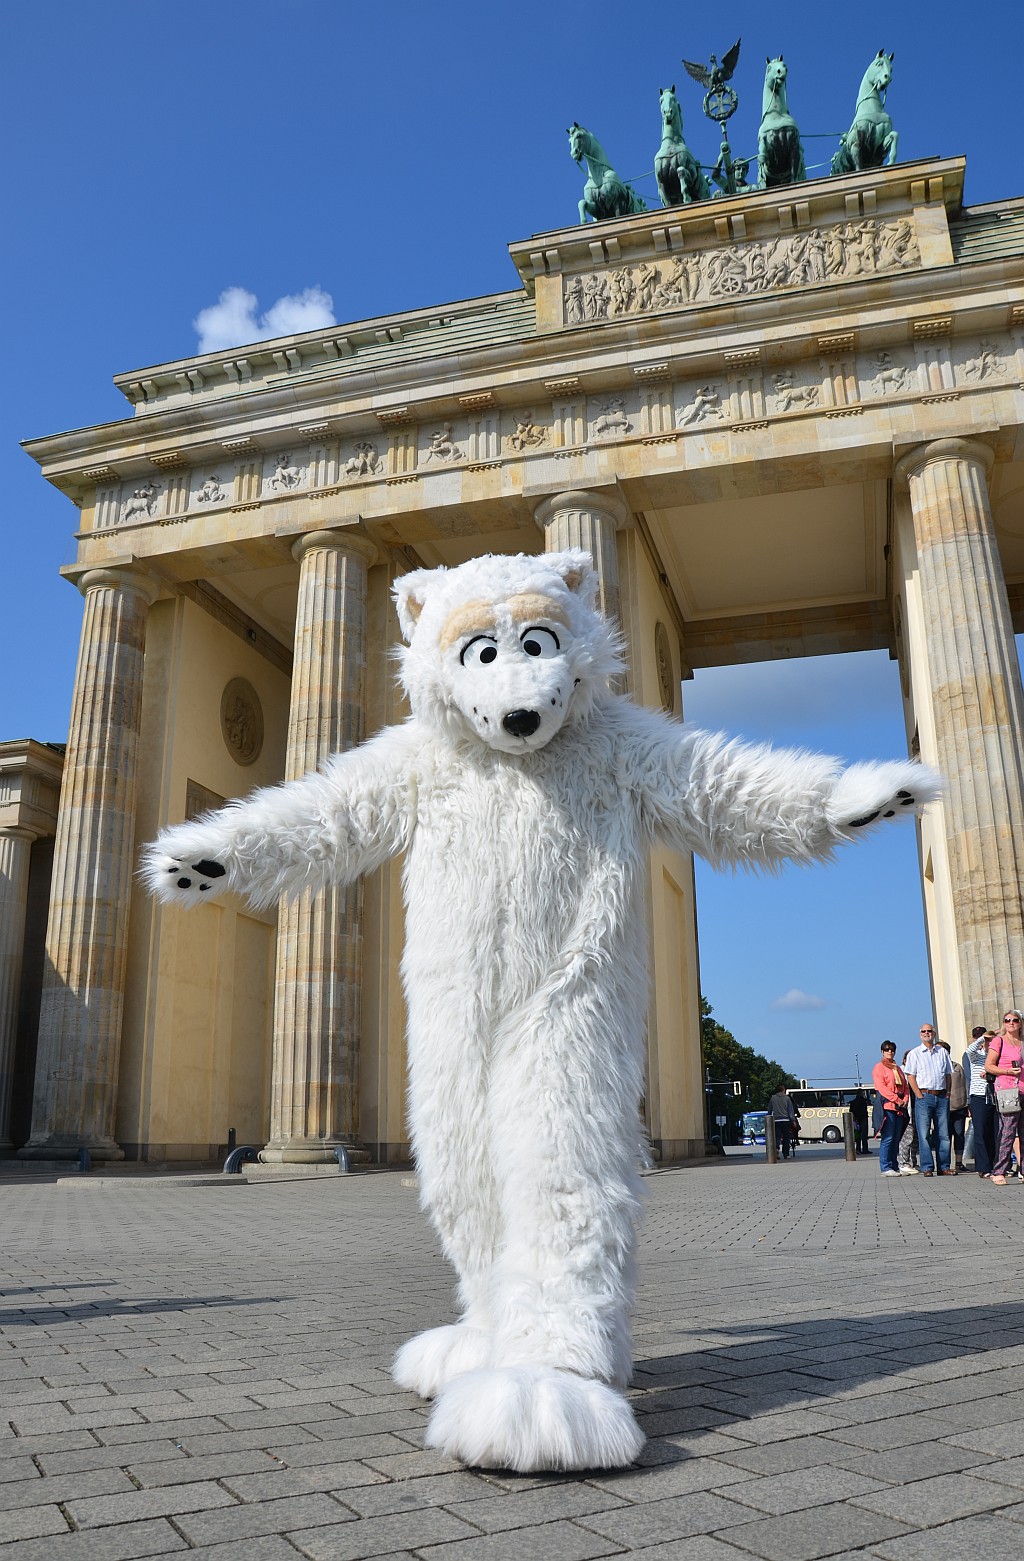 The Bear of Berlin